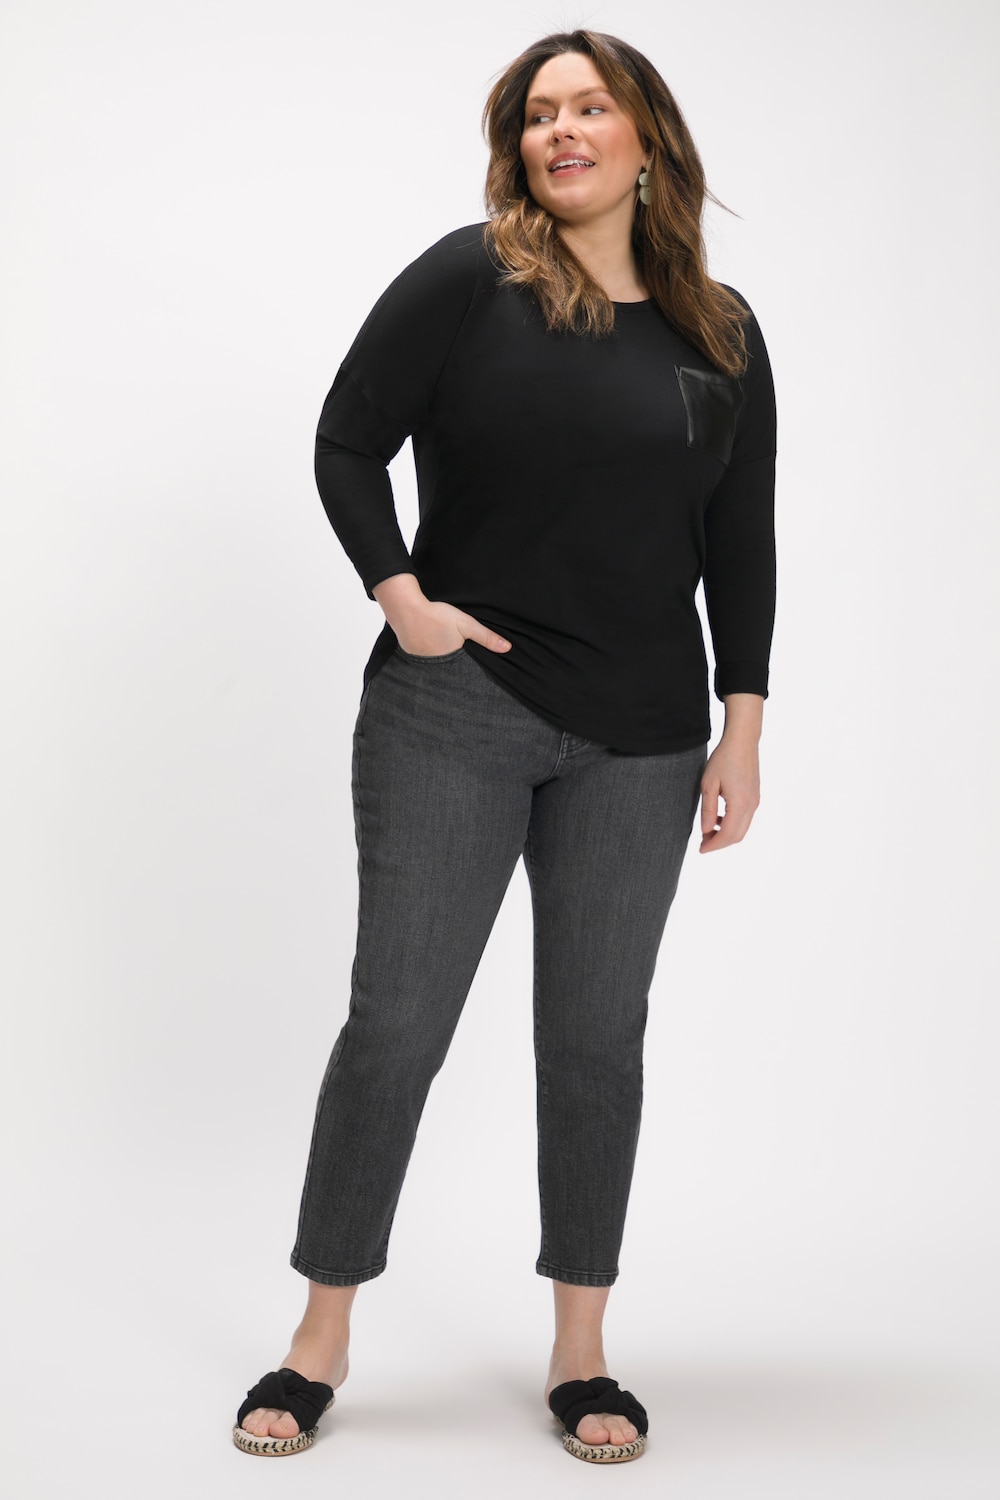 Große Größen Mom-Jeans, Damen, schwarz, Größe: 92, Baumwolle, Ulla Popken von Ulla Popken